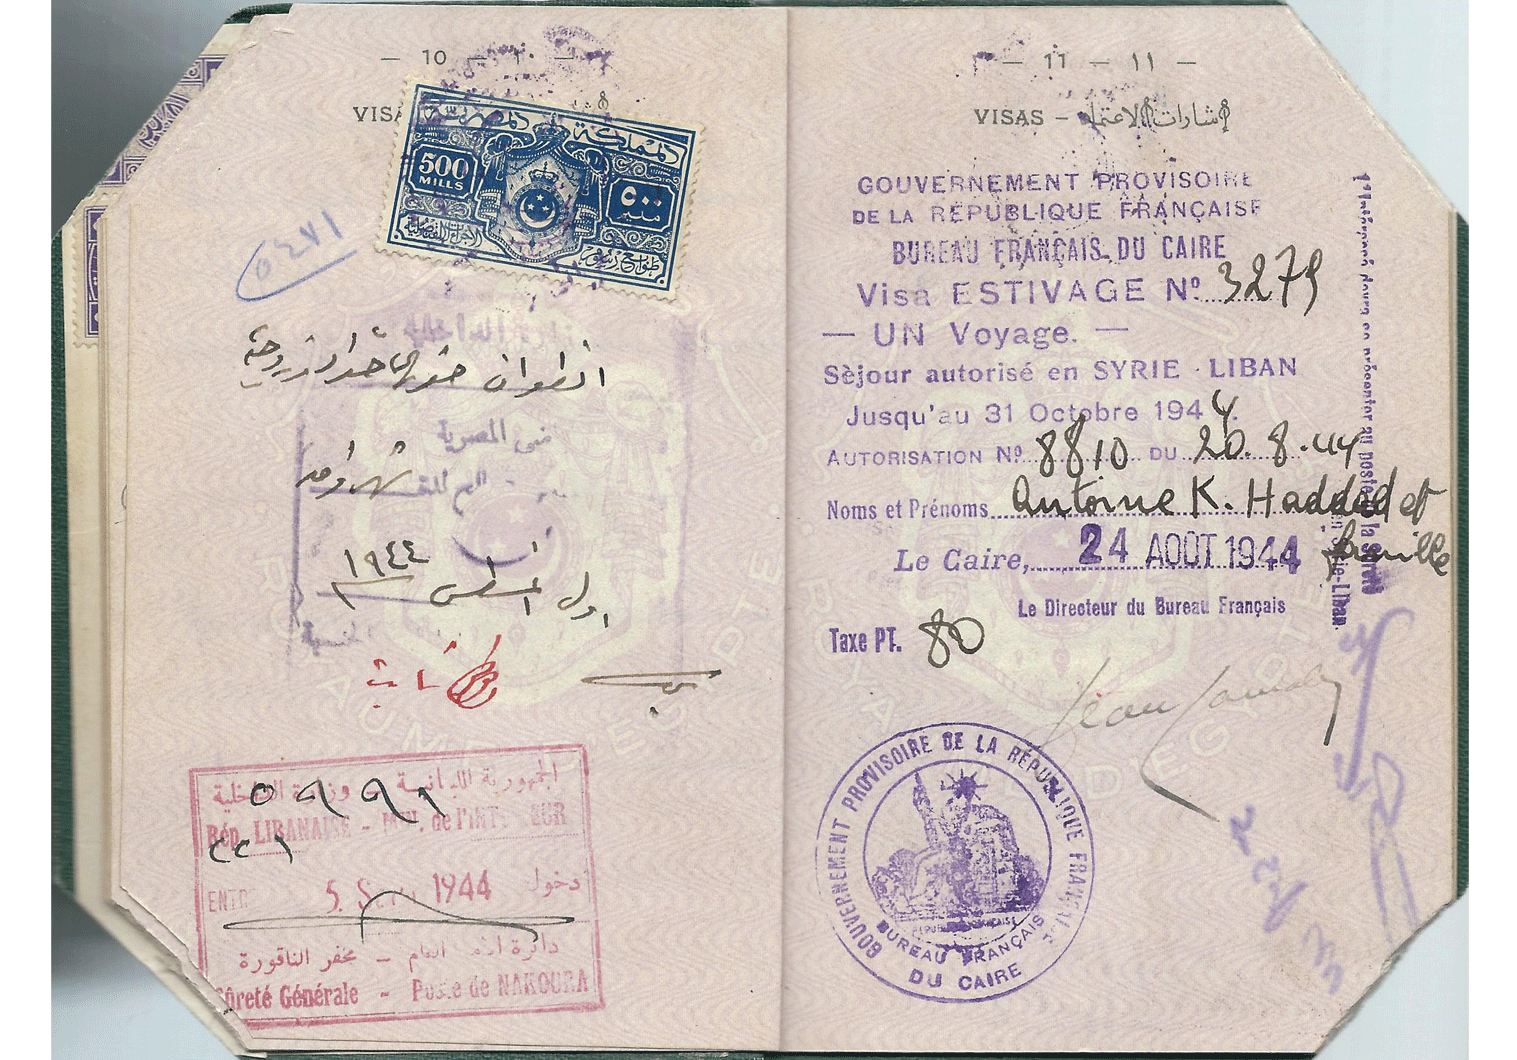 WWII French passport visa